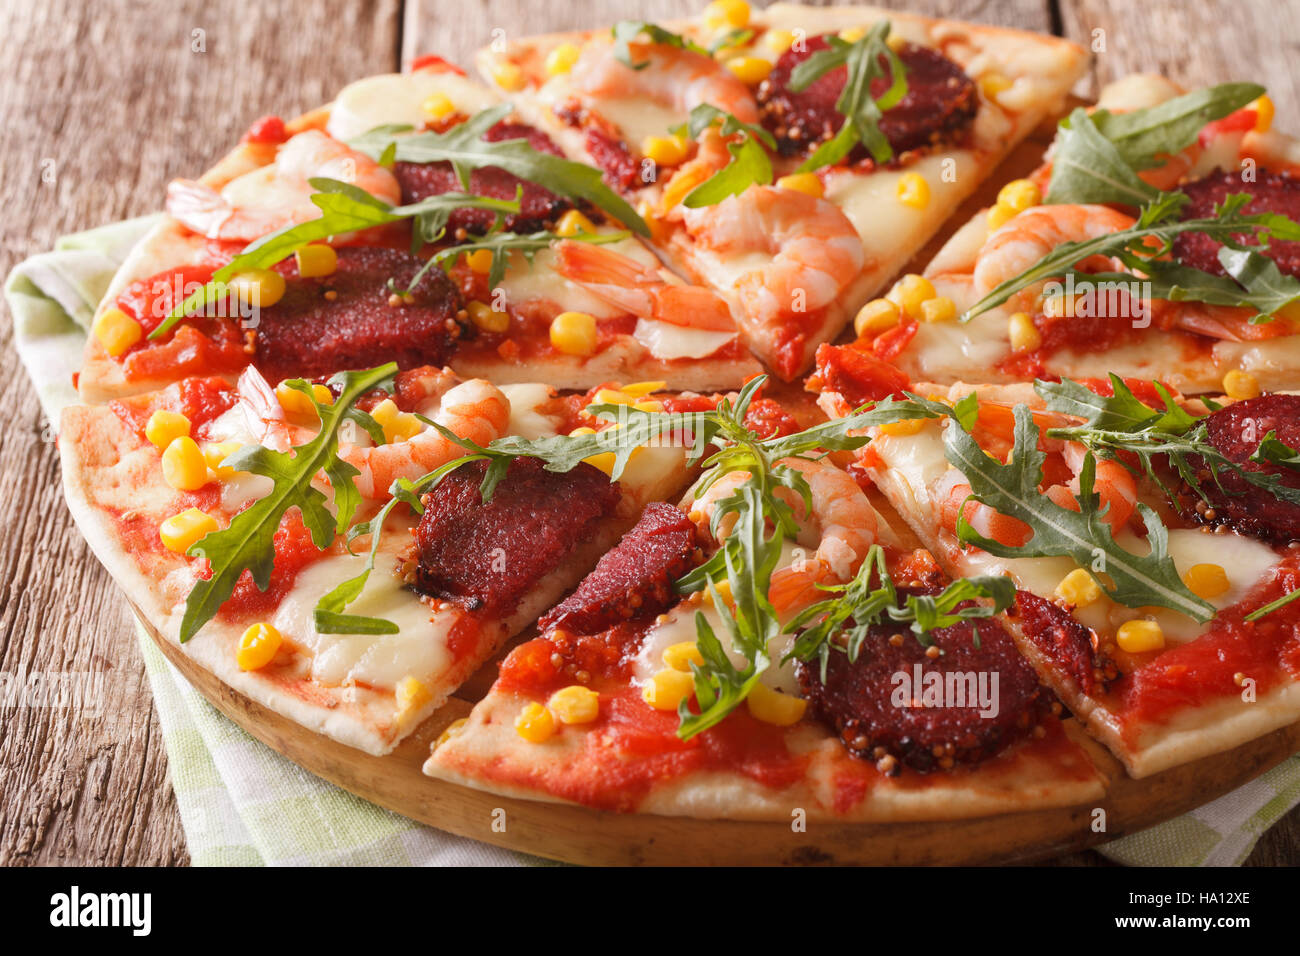 Pizza aux crevettes, salami, fromage et roquette close-up sur une planche de bois horizontal. Banque D'Images